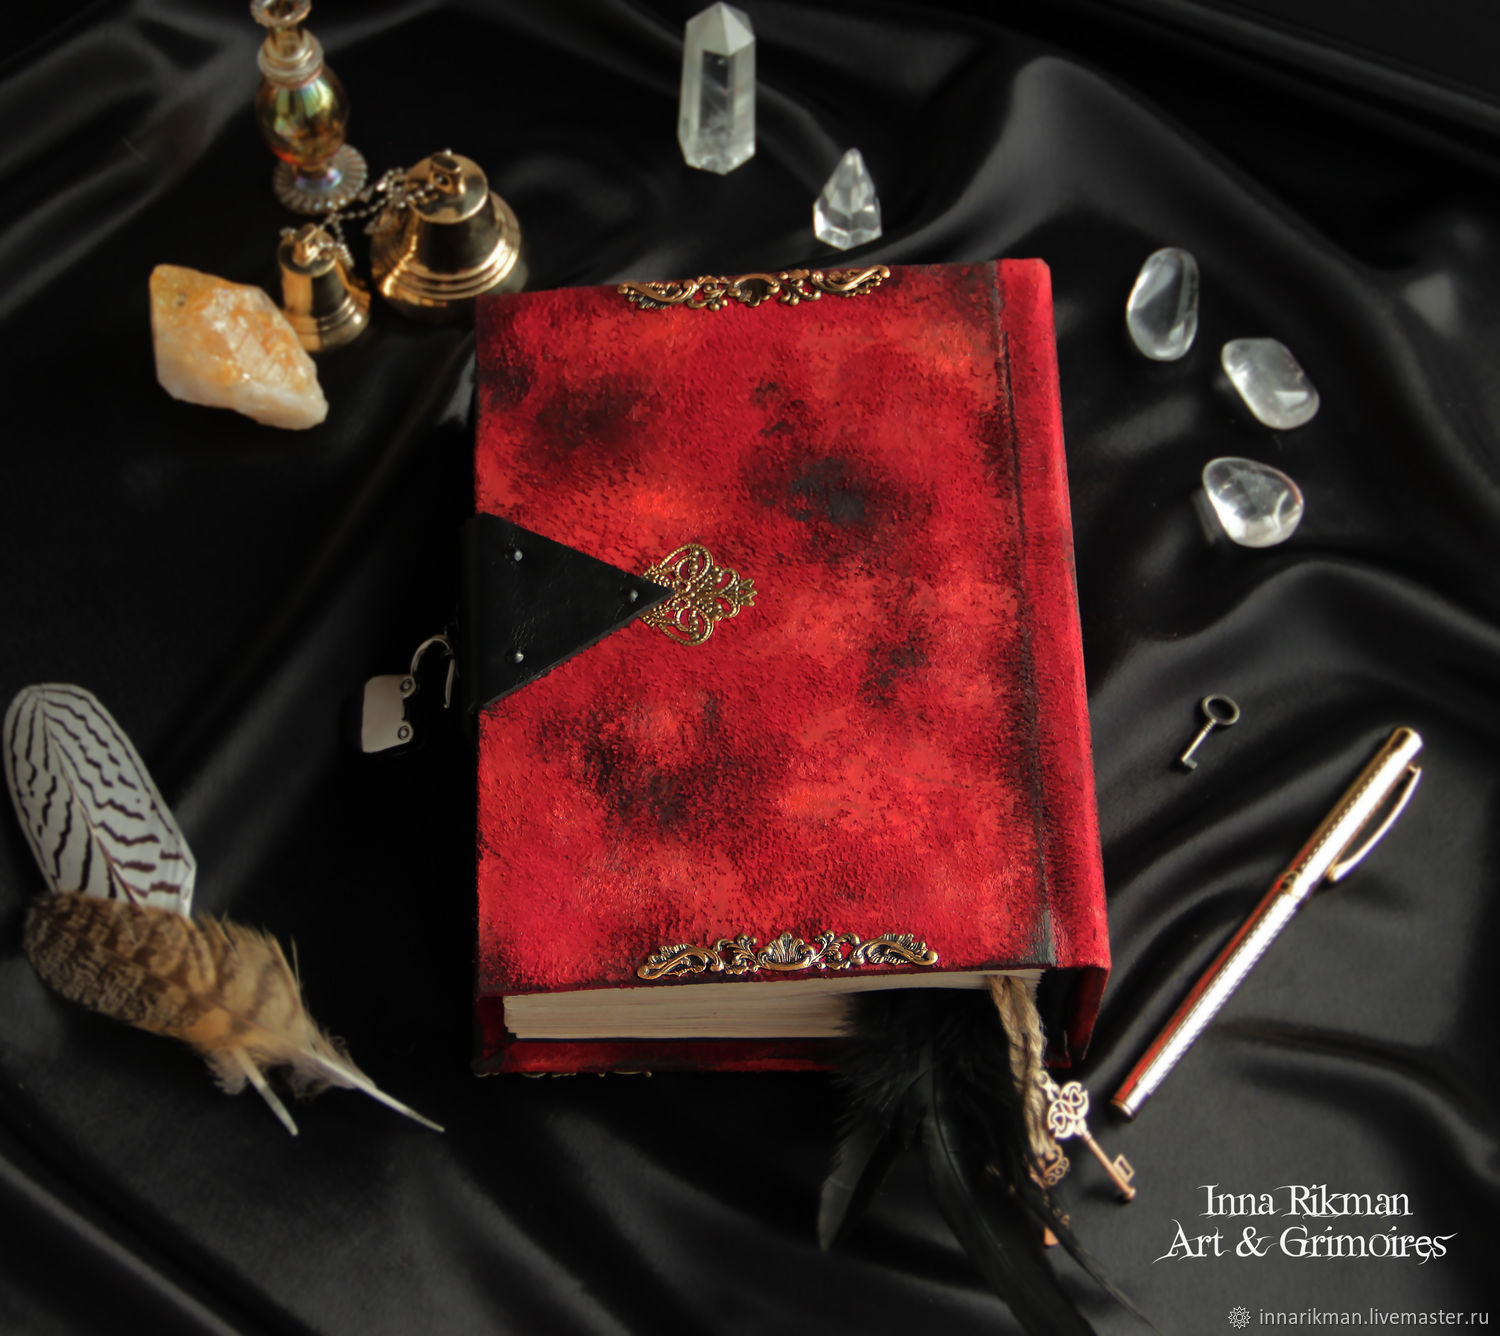 Гримуар - это книга, описывающая магические процедуры и заклинания для вызова духов